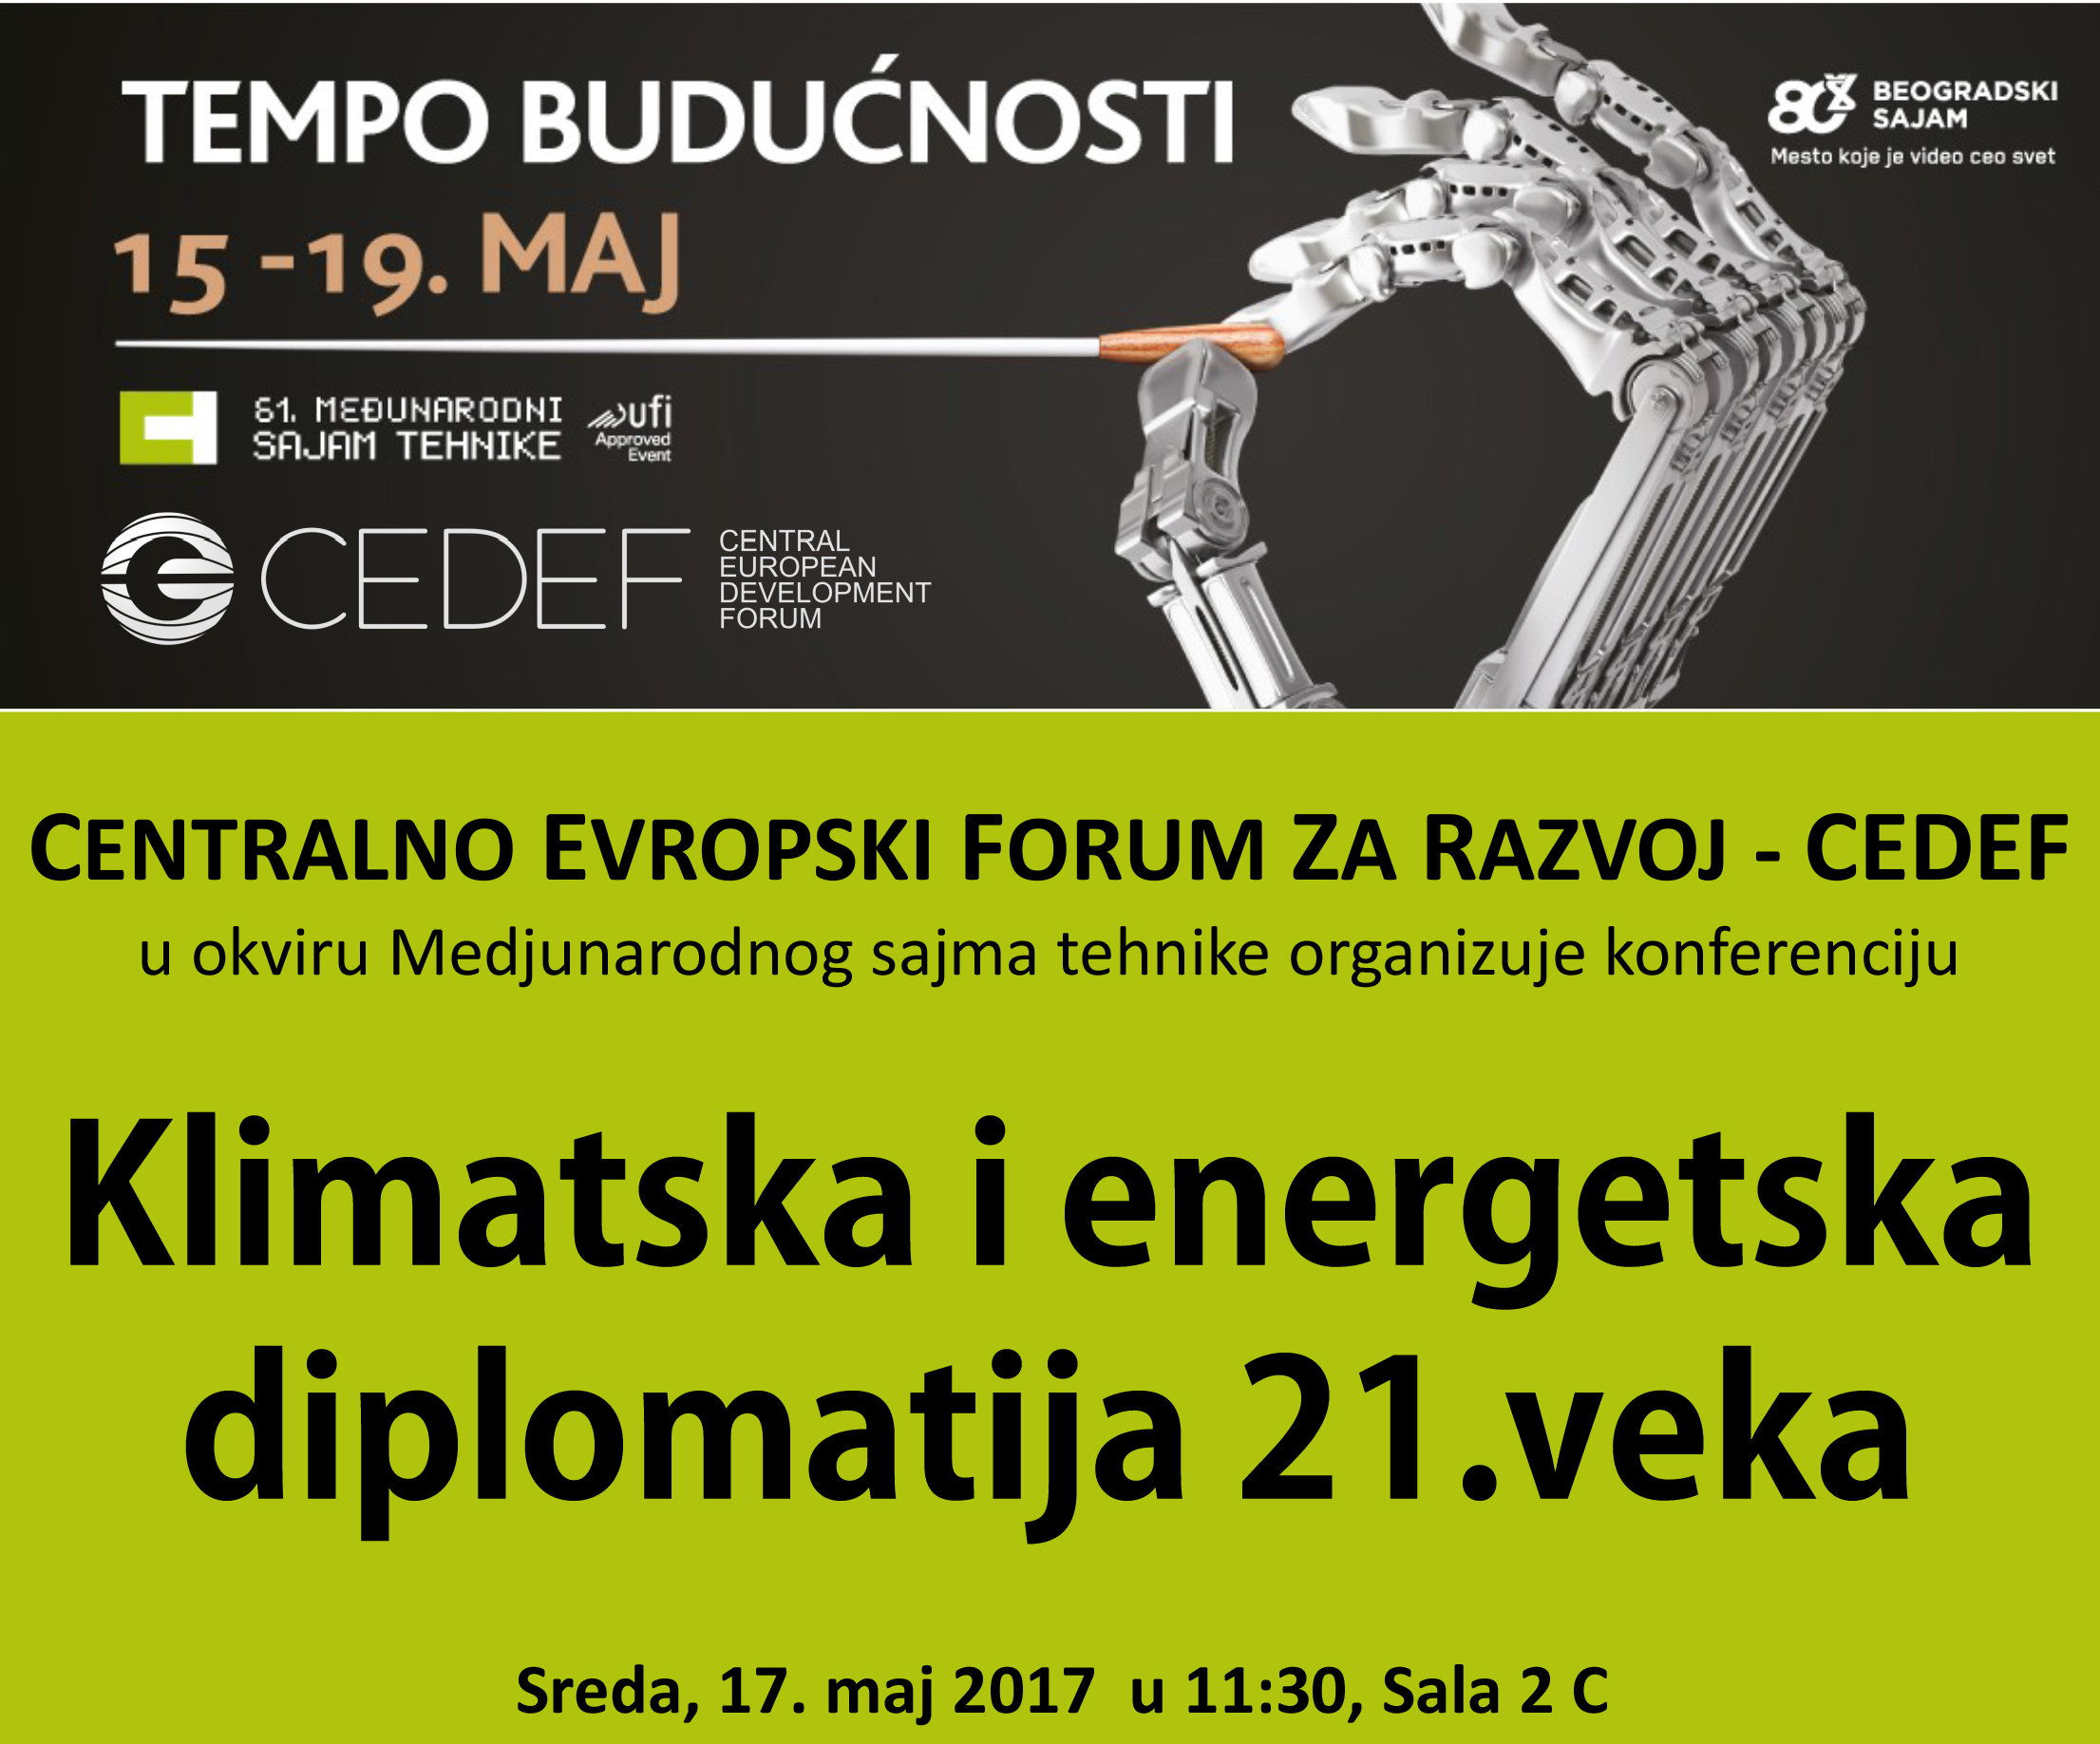 Klimatska i energetska diplomatija 21. veka – konferencija u organizaciji CEDEF-a na Međunarodnom sajmu tehnike